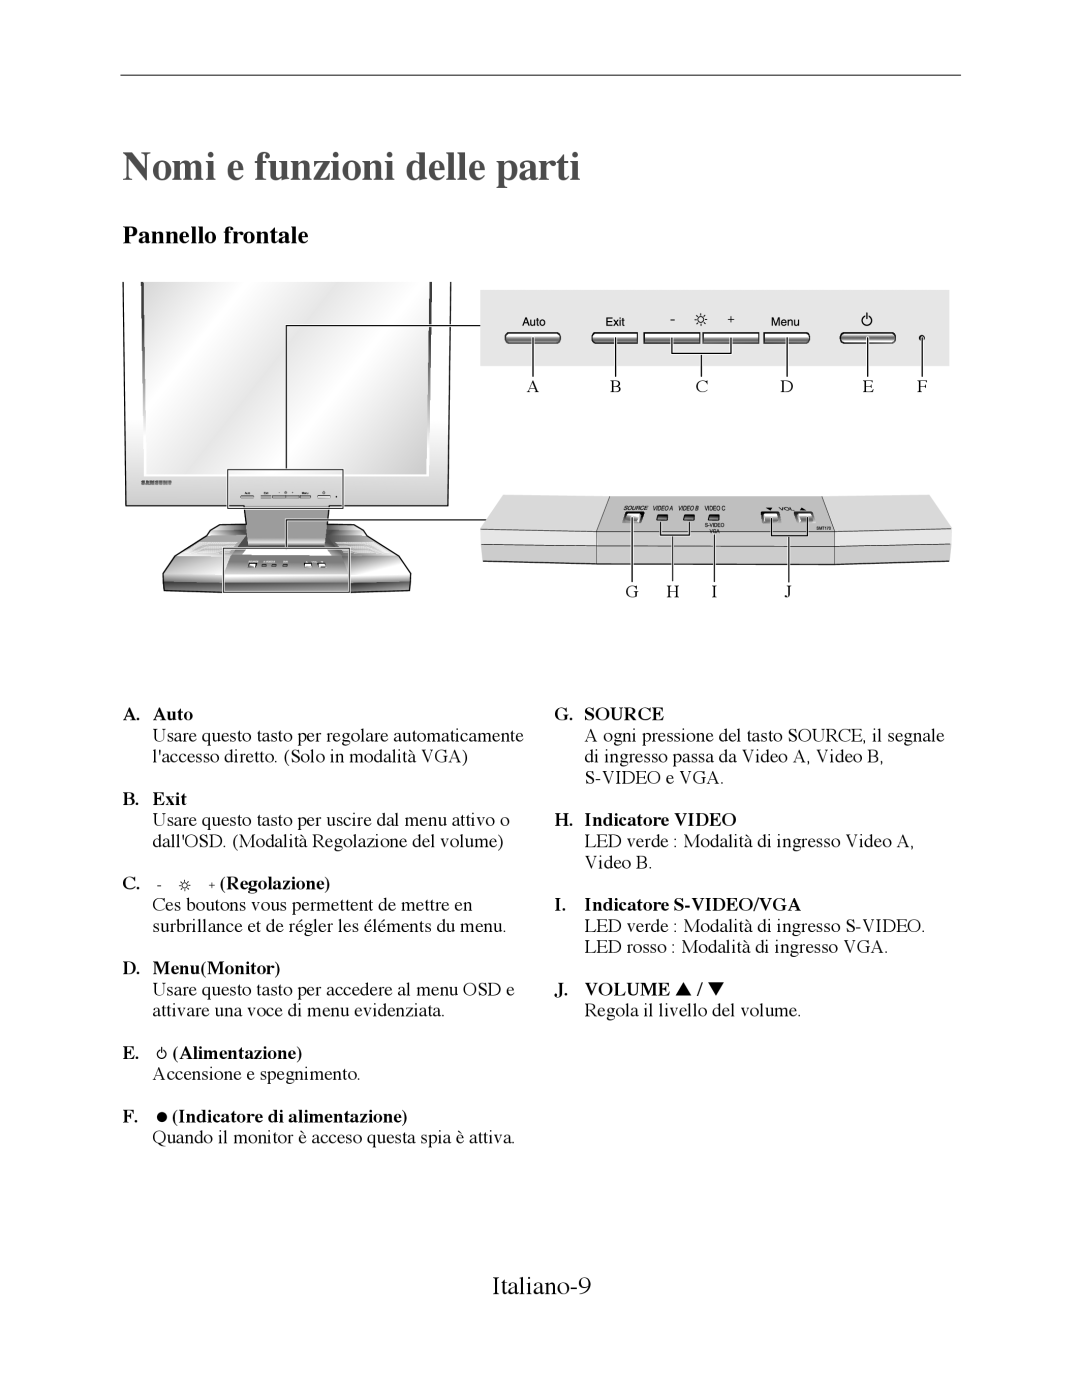 Samsung SMT-170P manual Nomi e funzioni delle parti, Pannello frontale, Italiano-9 